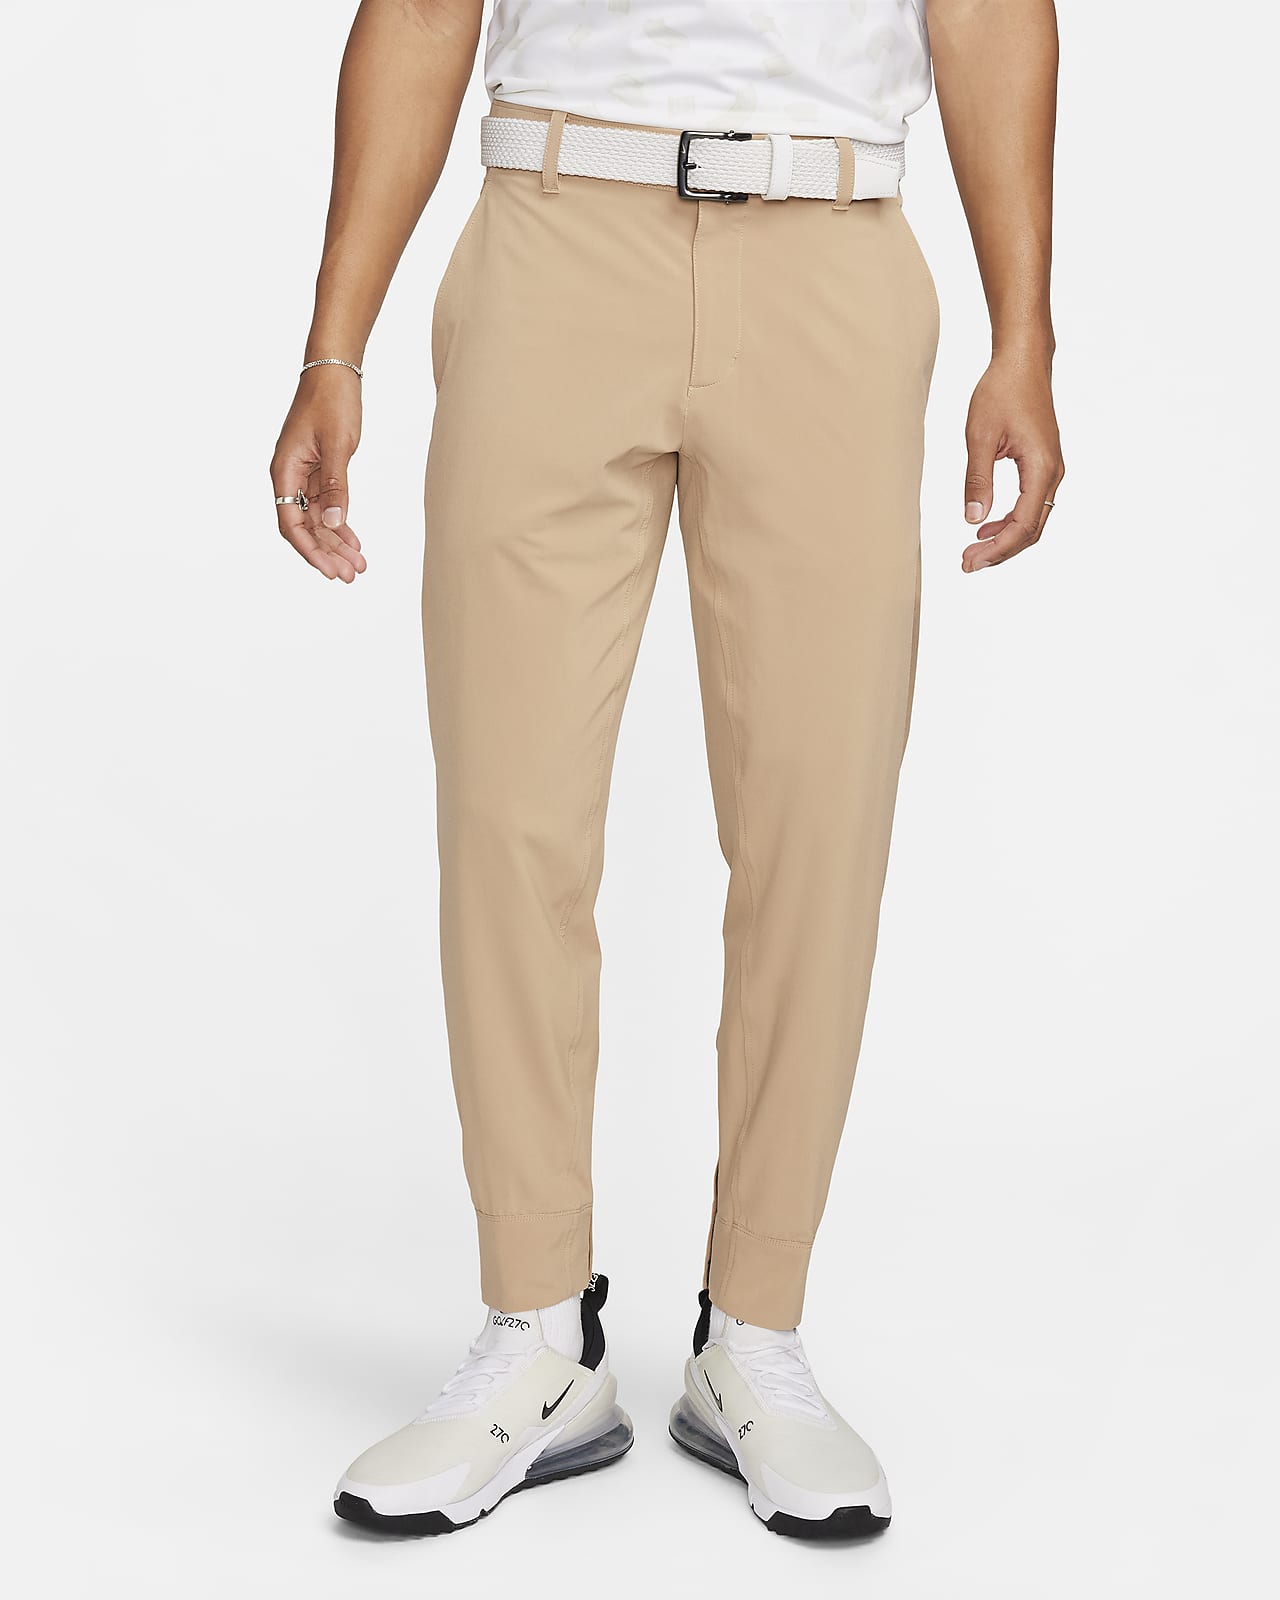 Nike Repel Men's Golf Utility Pants.